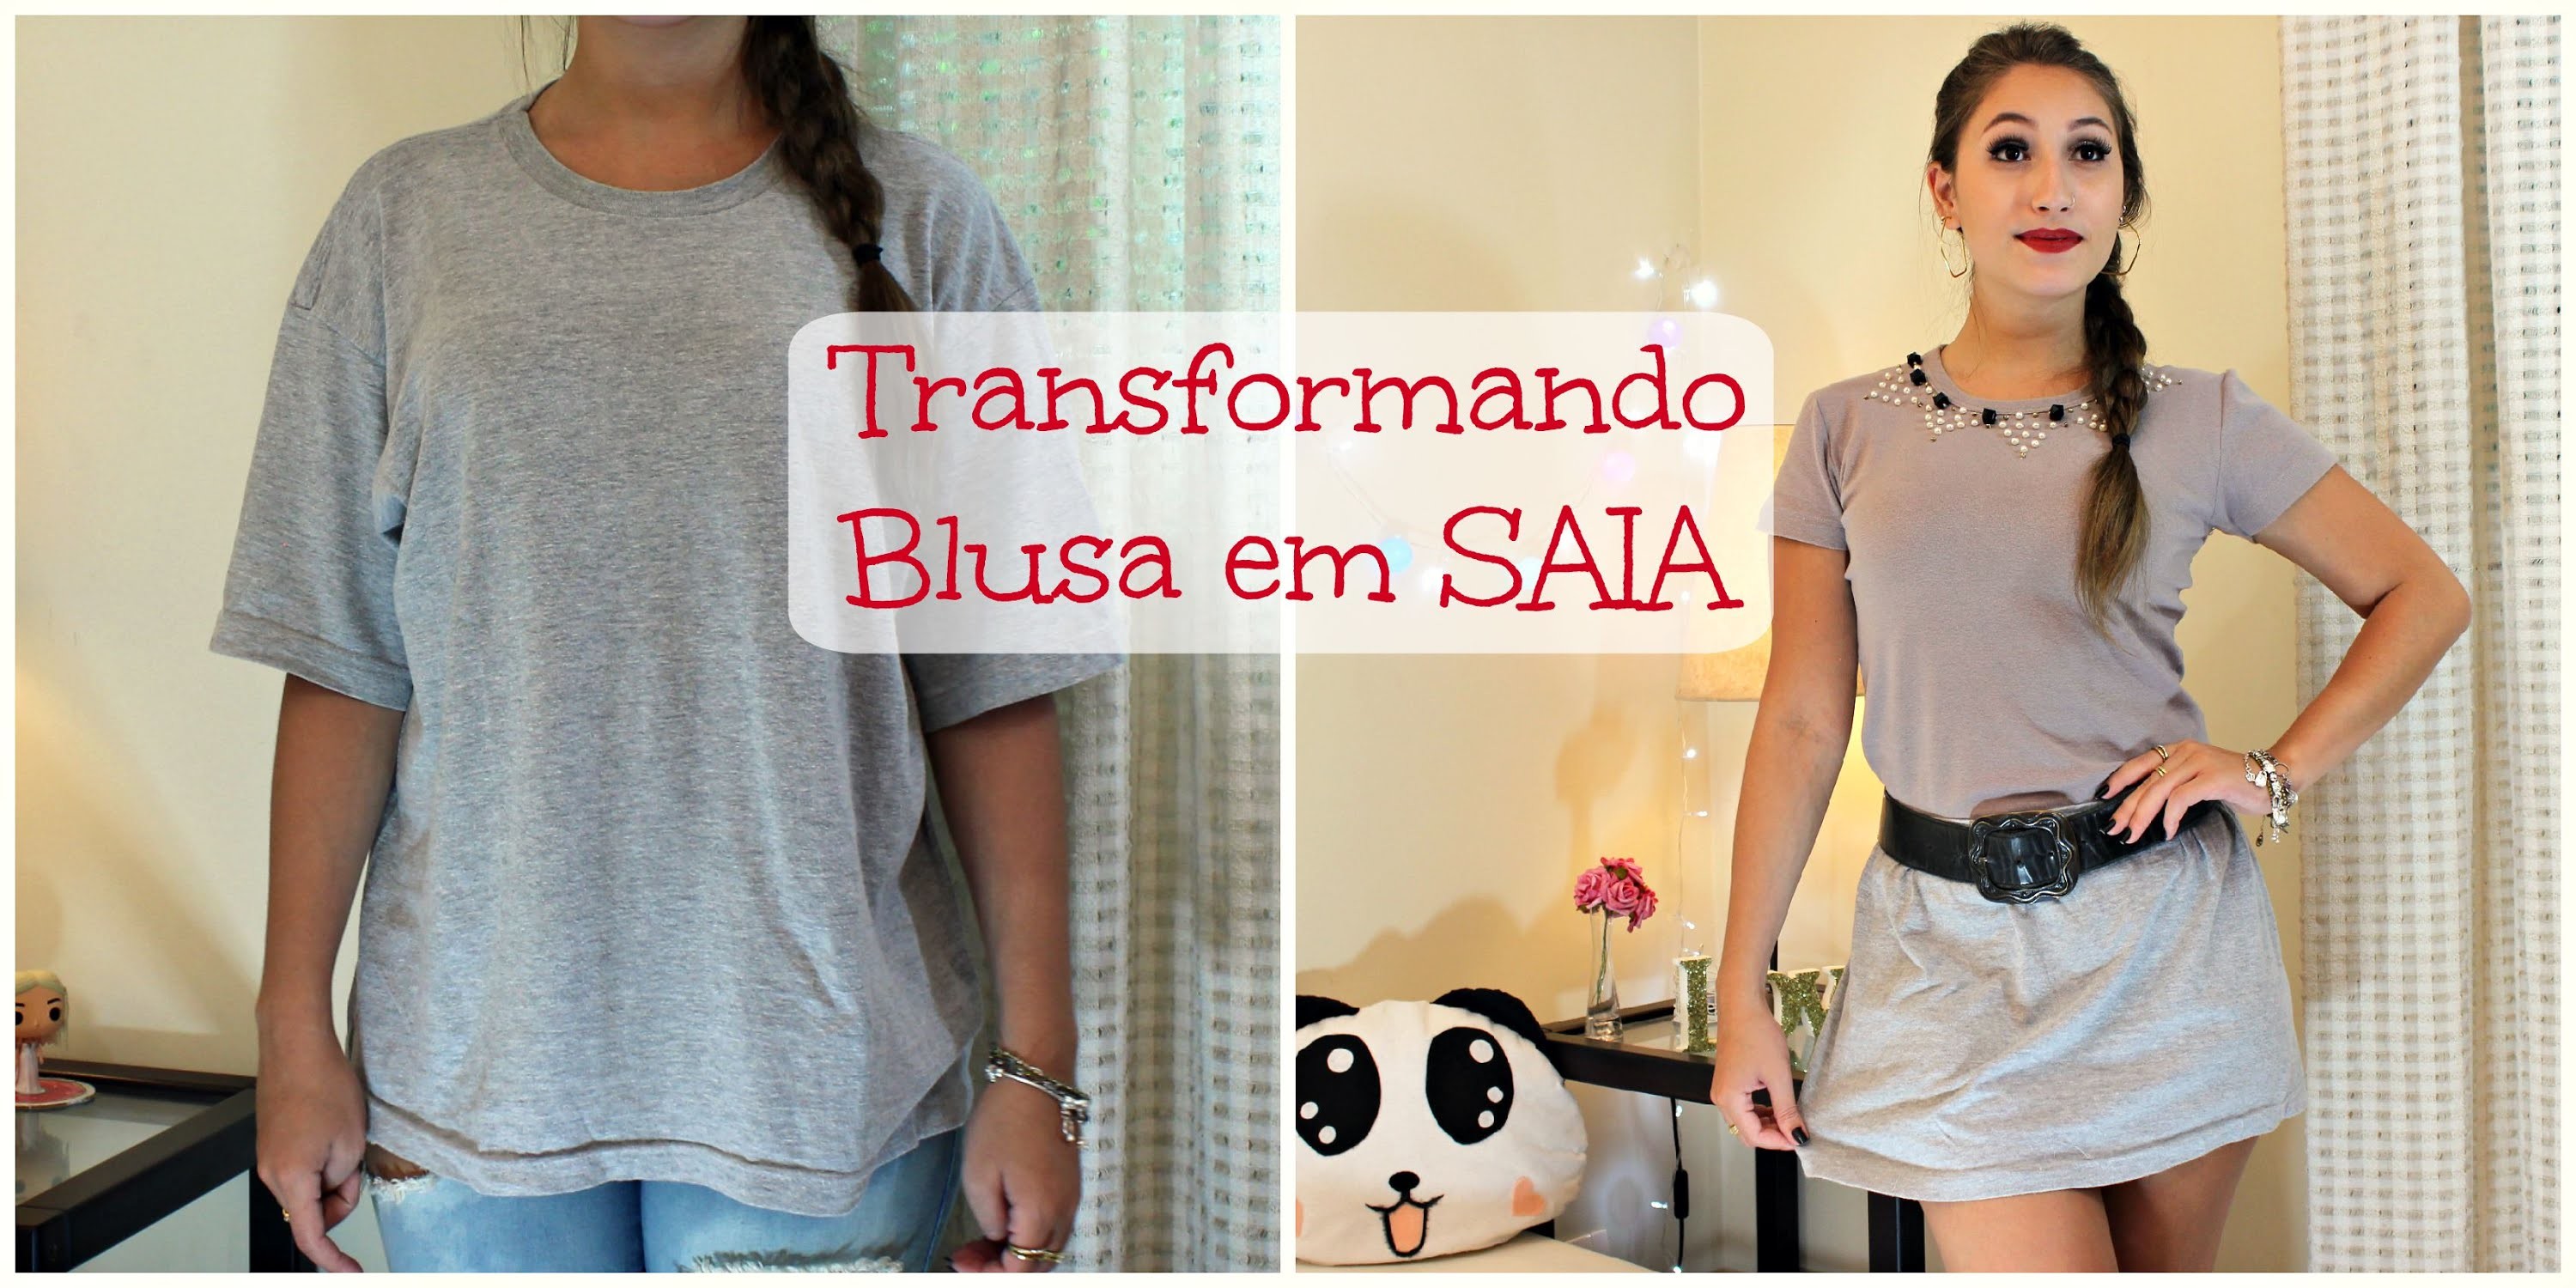 DIY - Customização: Transformando Blusa em SAIA